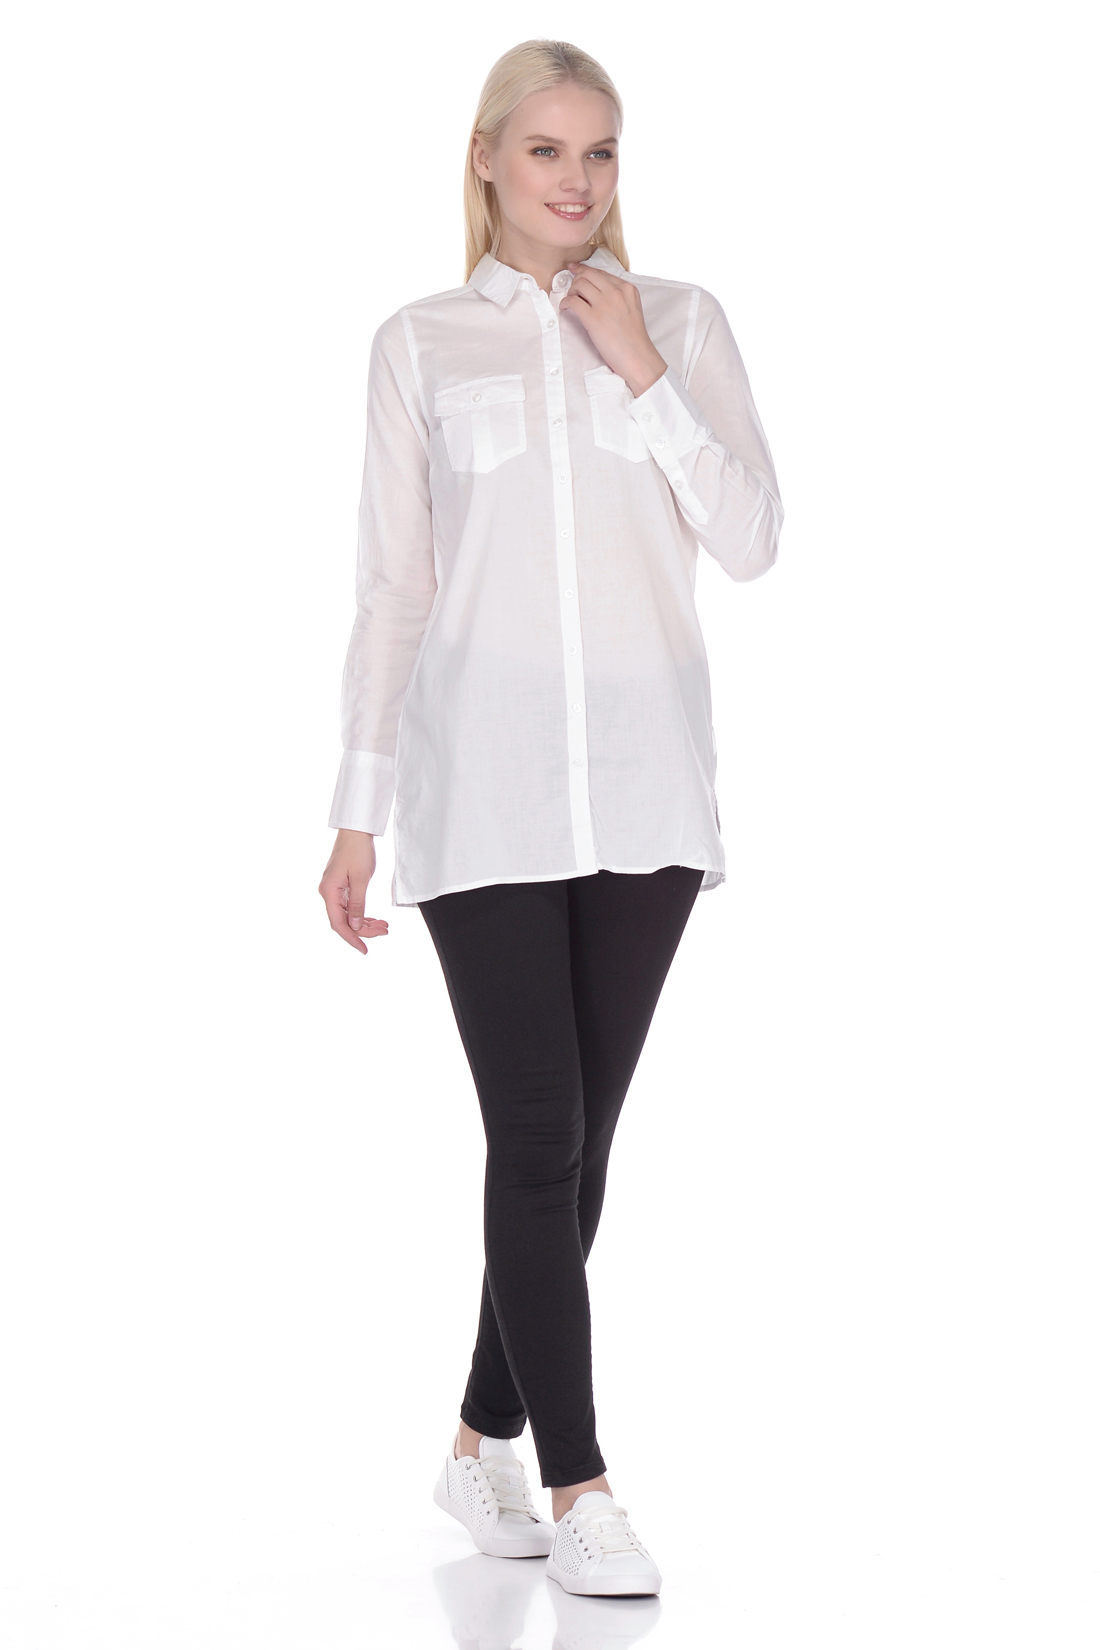 Удлинённая рубашка из хлопка (арт. baon B178055), размер XS, цвет белый Удлинённая рубашка из хлопка (арт. baon B178055) - фото 3